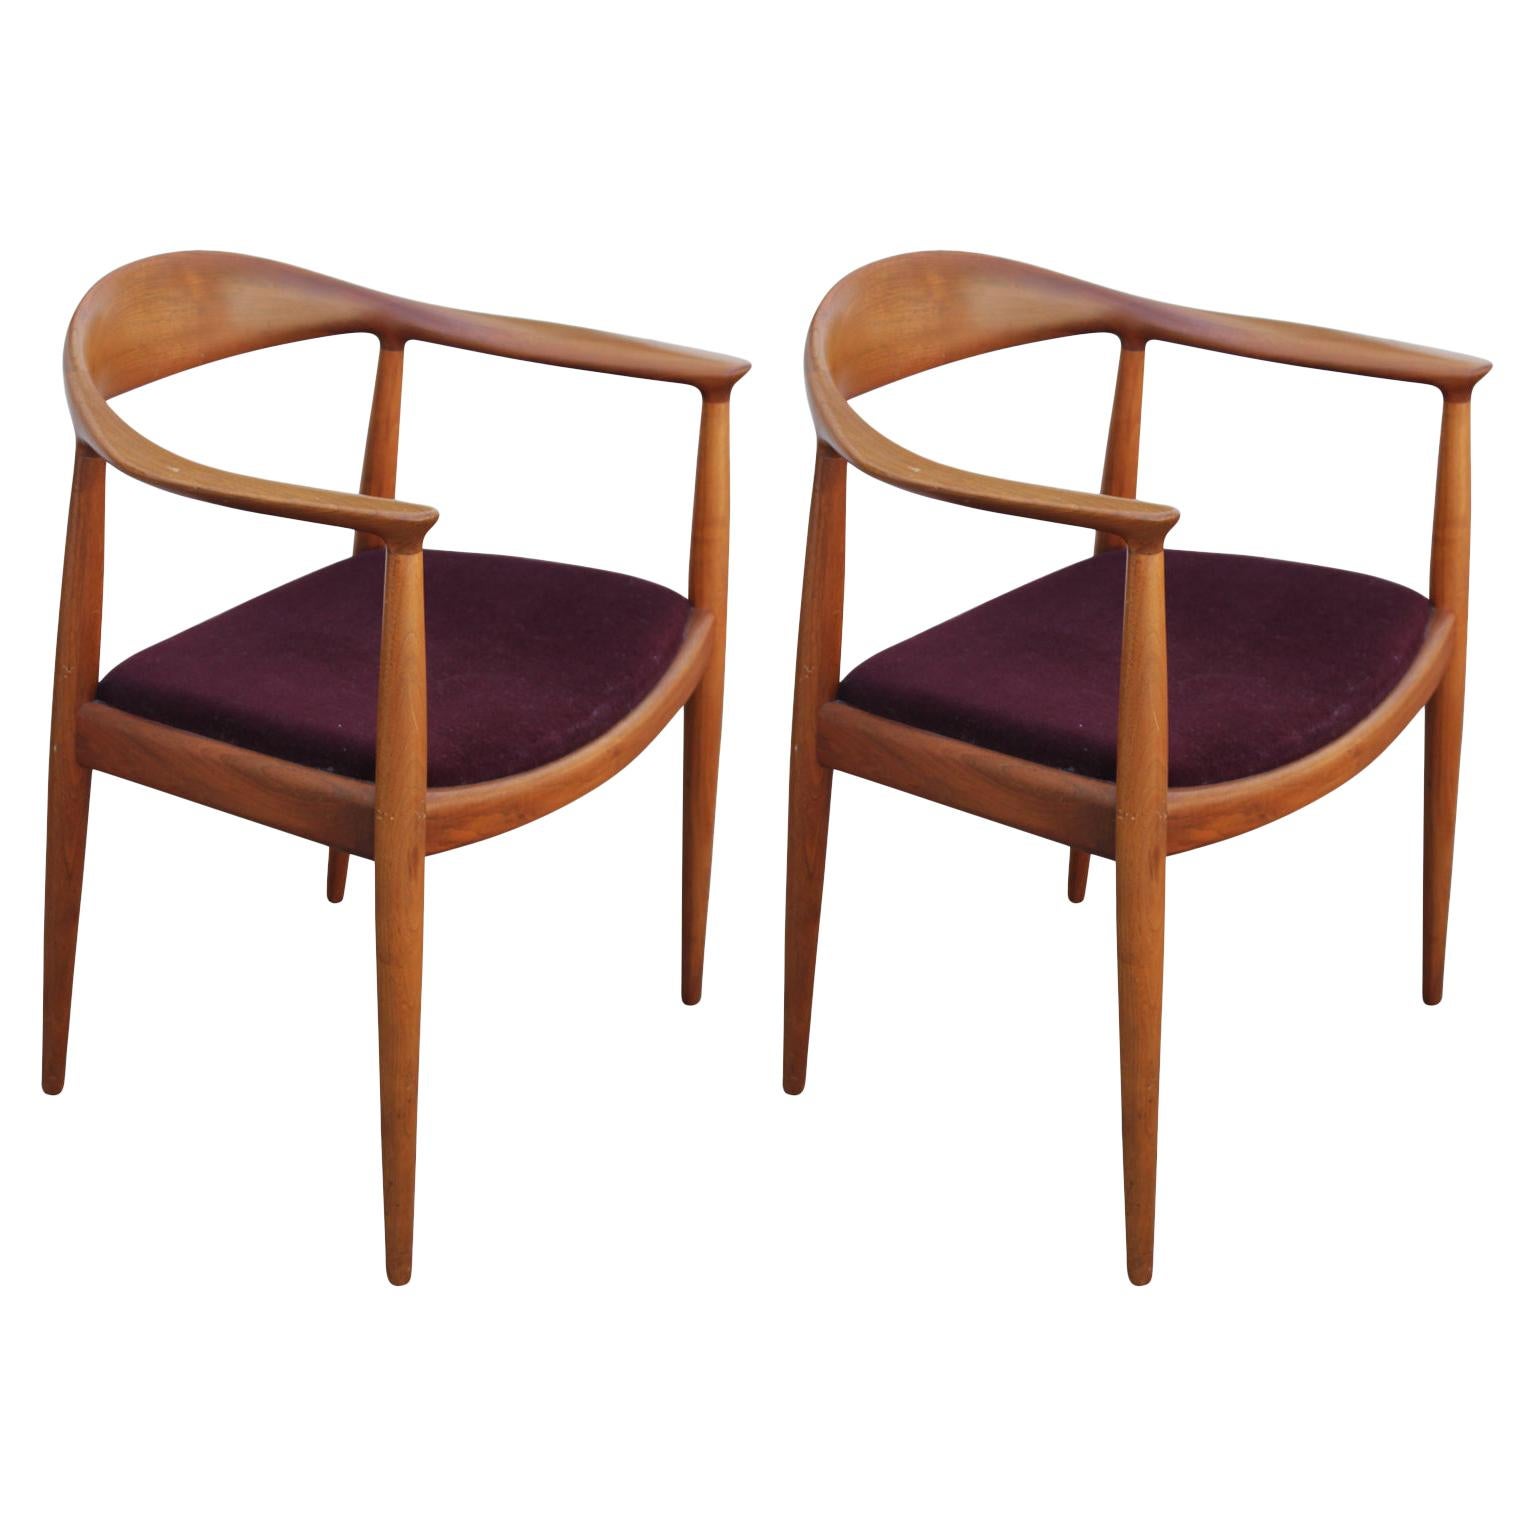 Pair of Teak Danish Dining Chairs by Hans Wegner / Hansen for Knoll Model JH501